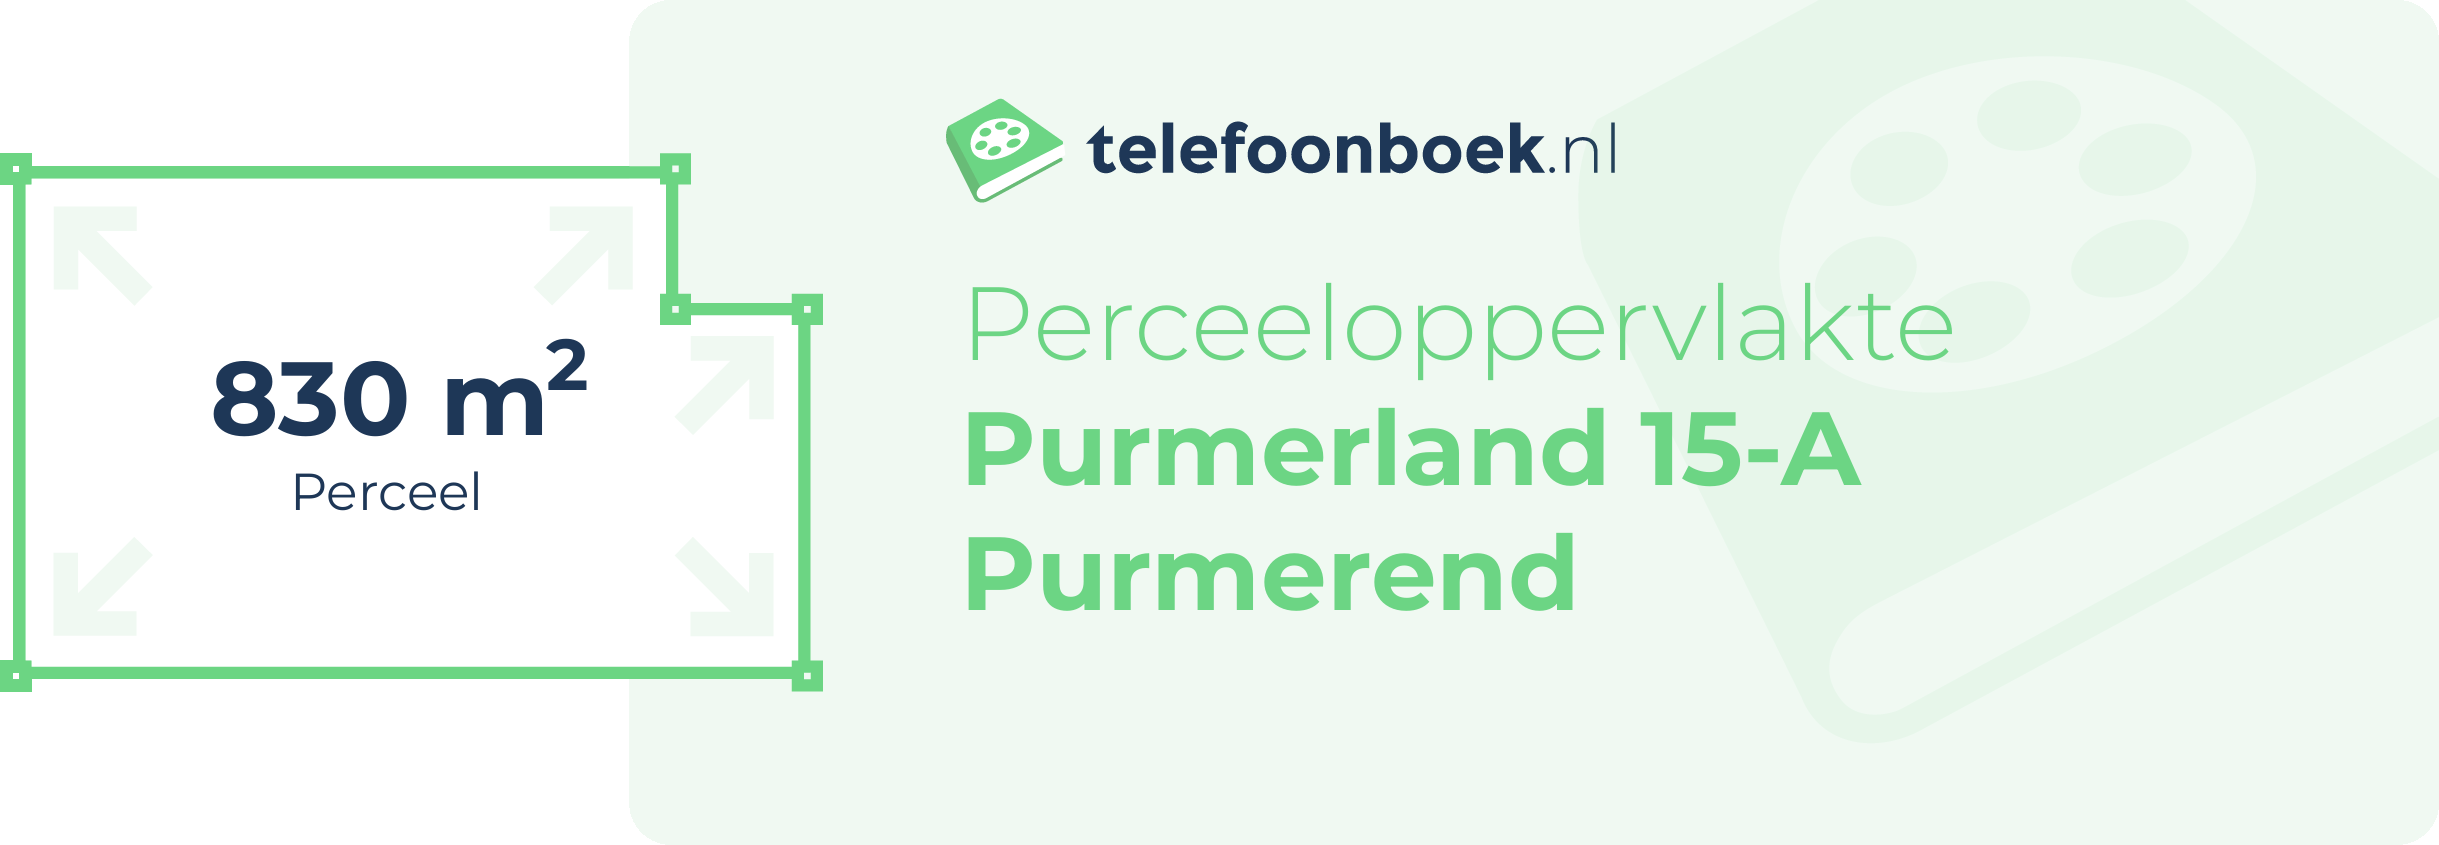 Perceeloppervlakte Purmerland 15-A Purmerend